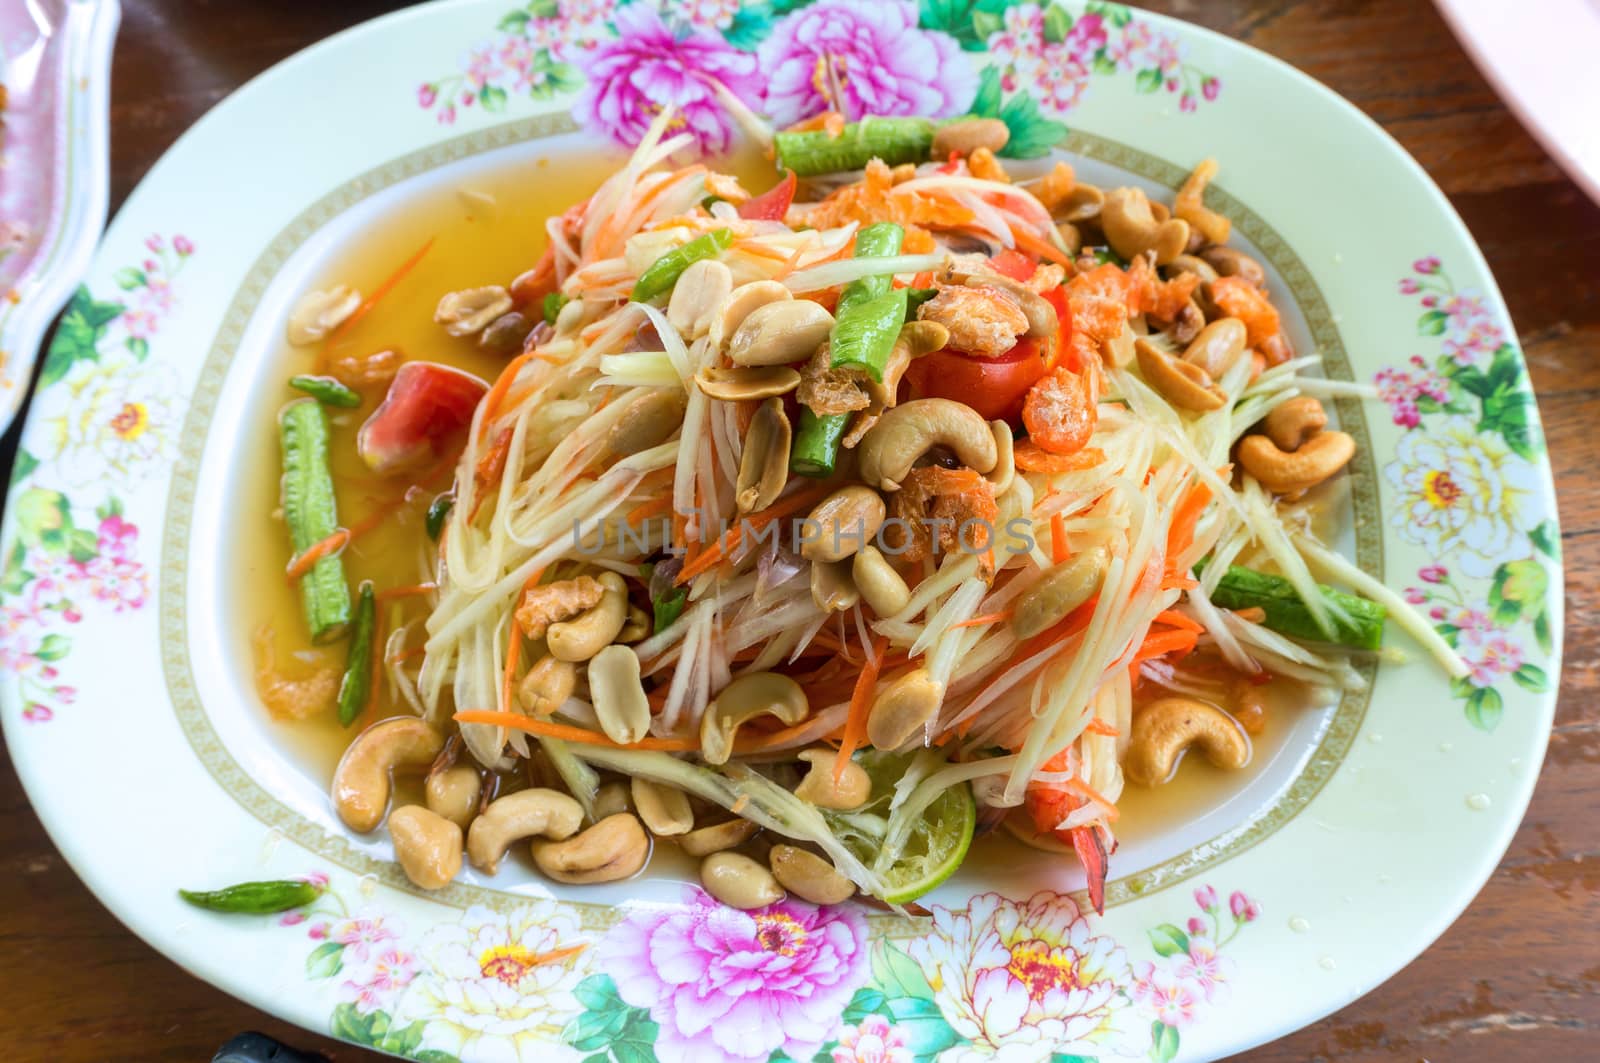 Papaya salad, Thai food in Plate on Wood Table